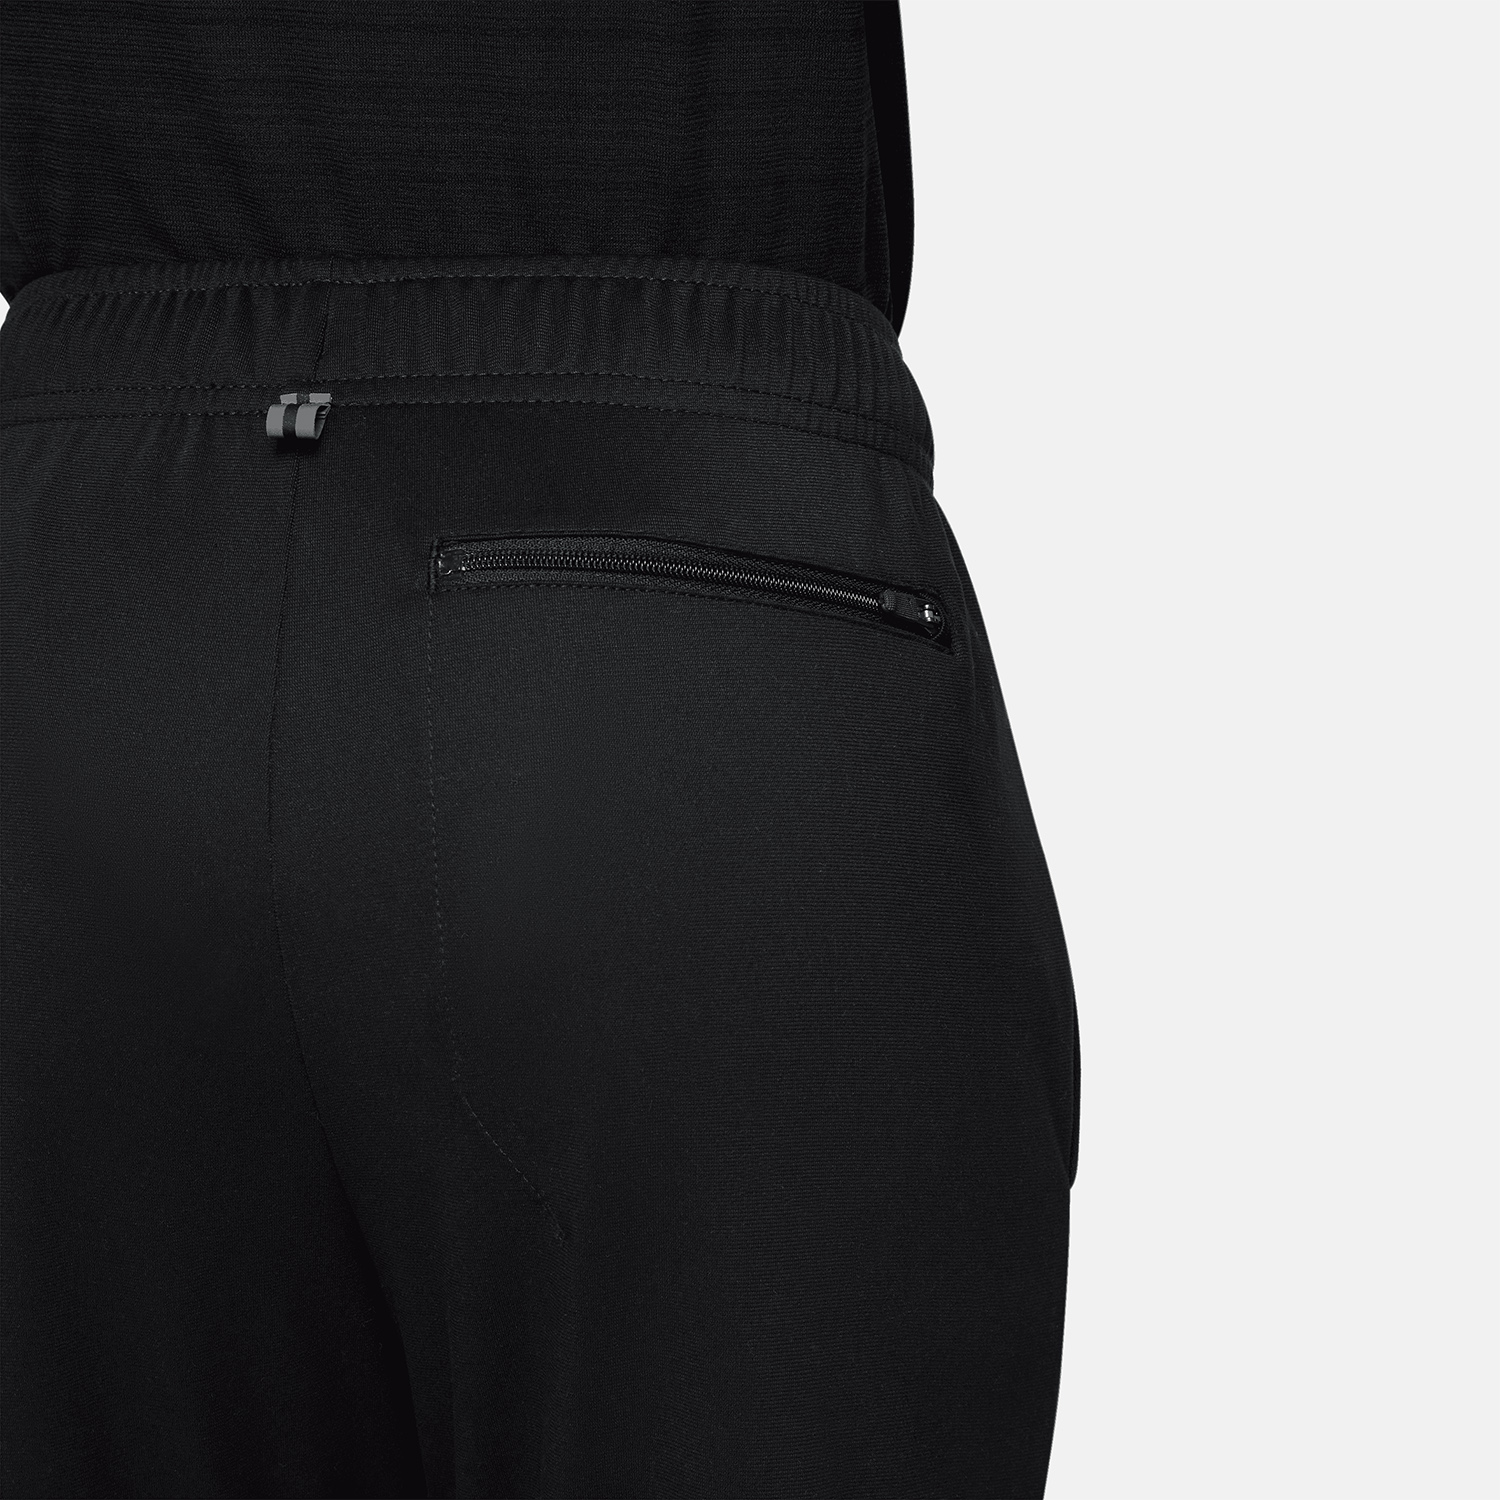 Nike Poly+ Pants Boy - Black